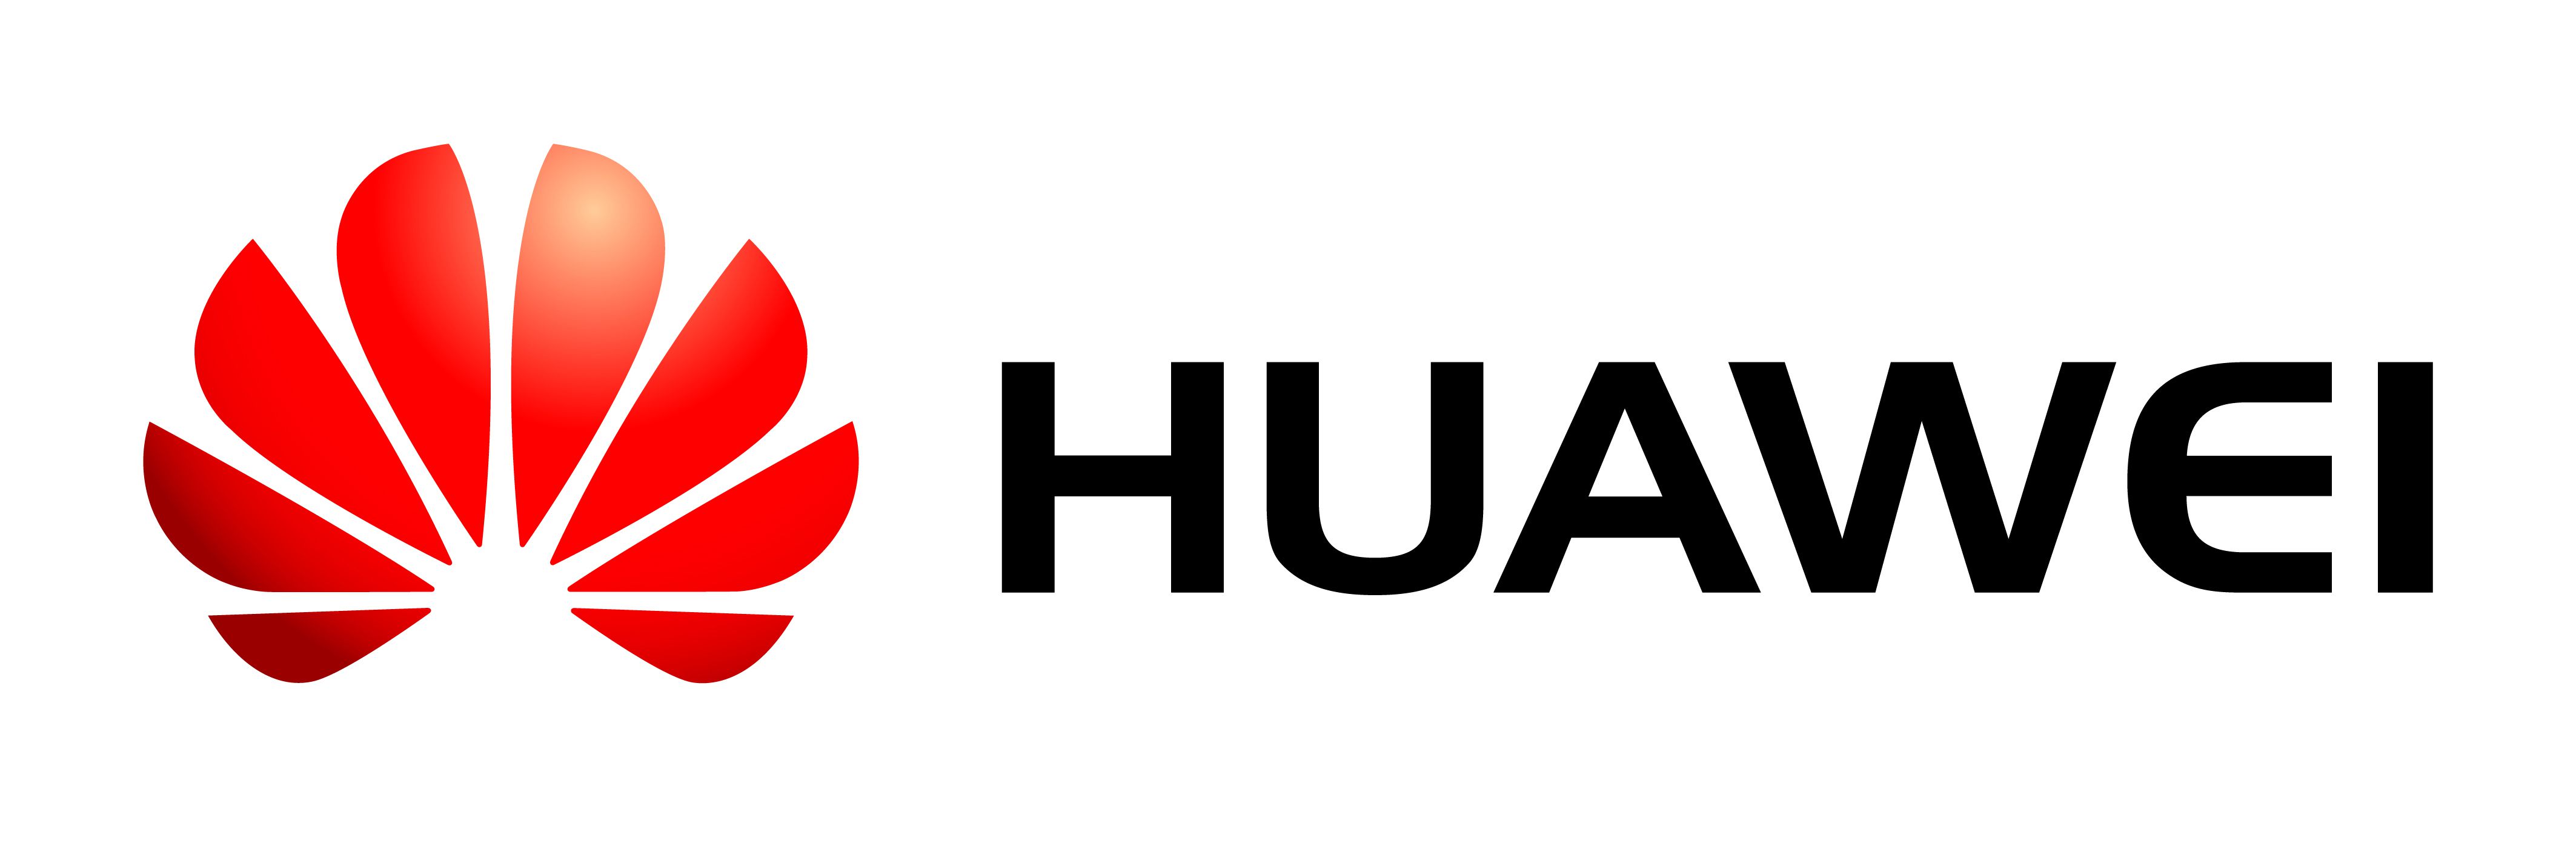 Huawei Logo - Huawei-logo - NewTelco GmbH